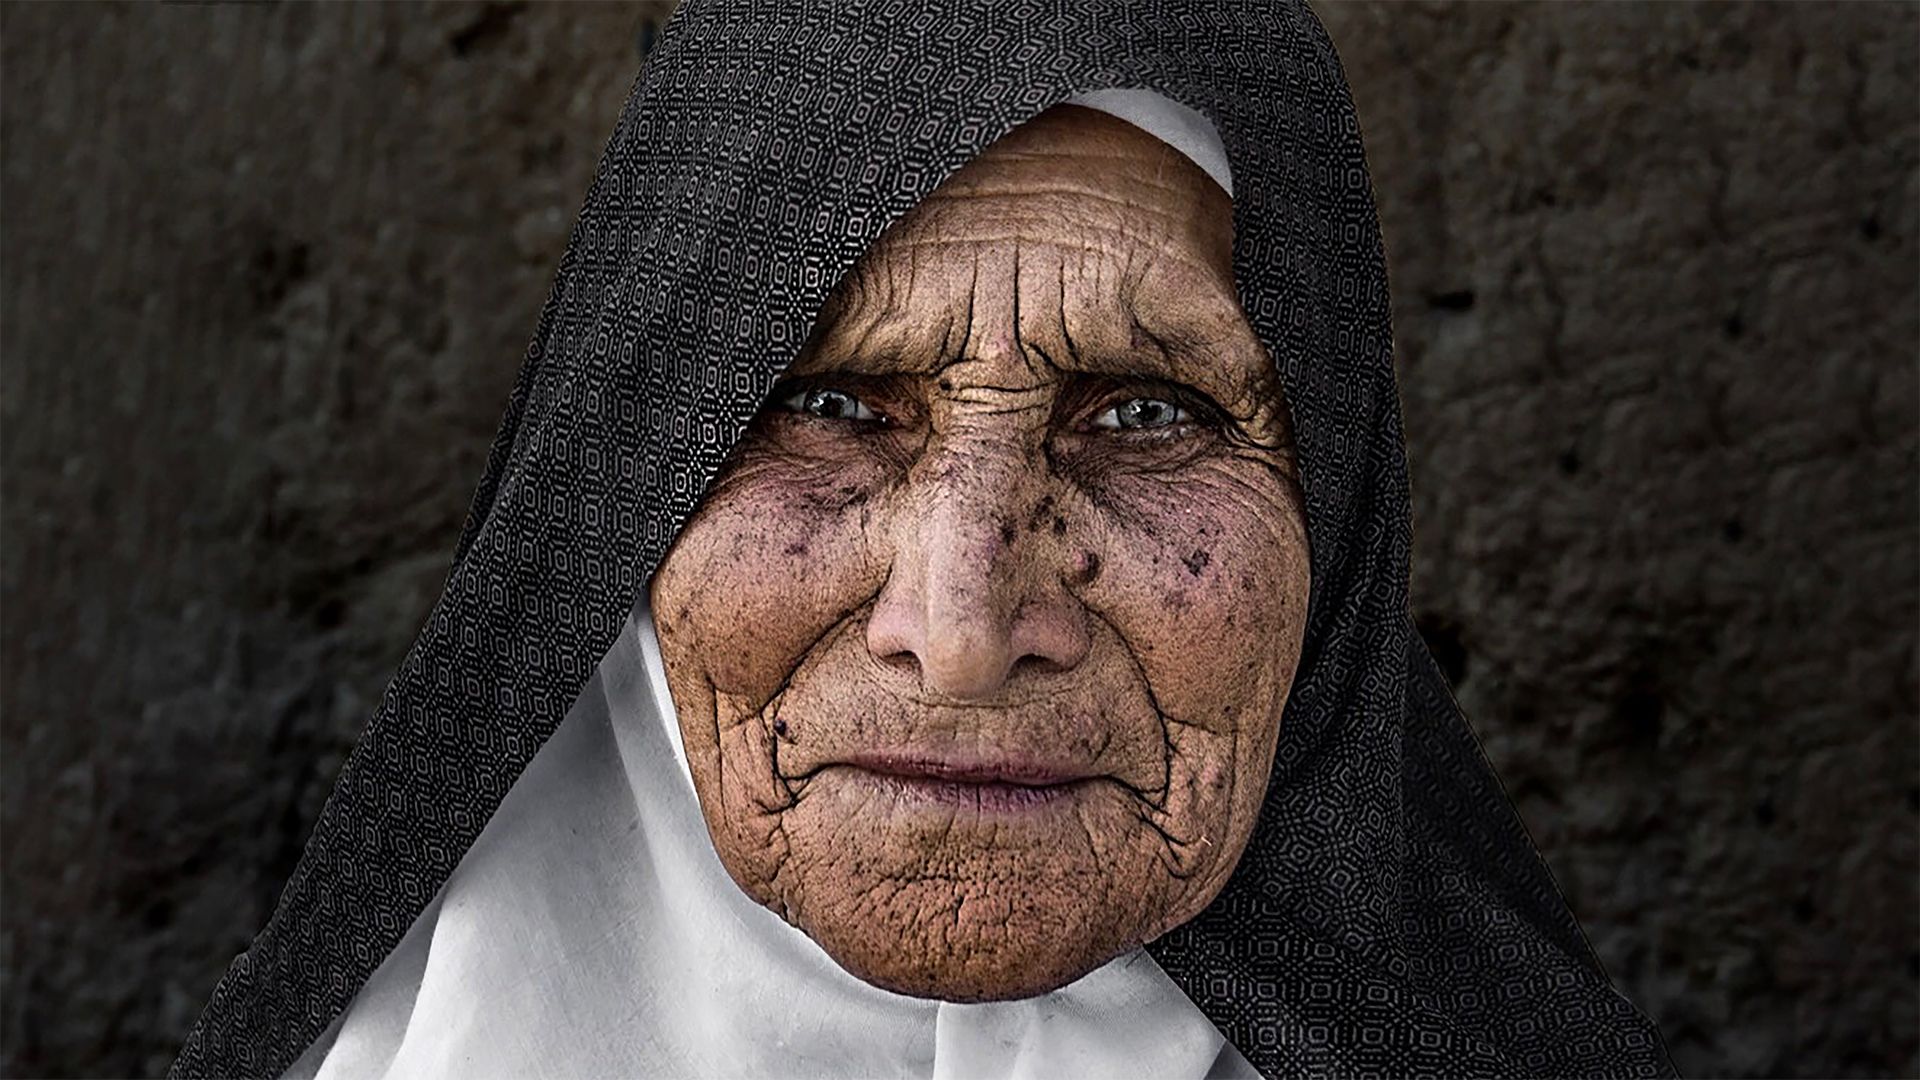 شاهد بالصور: حياة الناس بعدسة المصور نادر العجمي